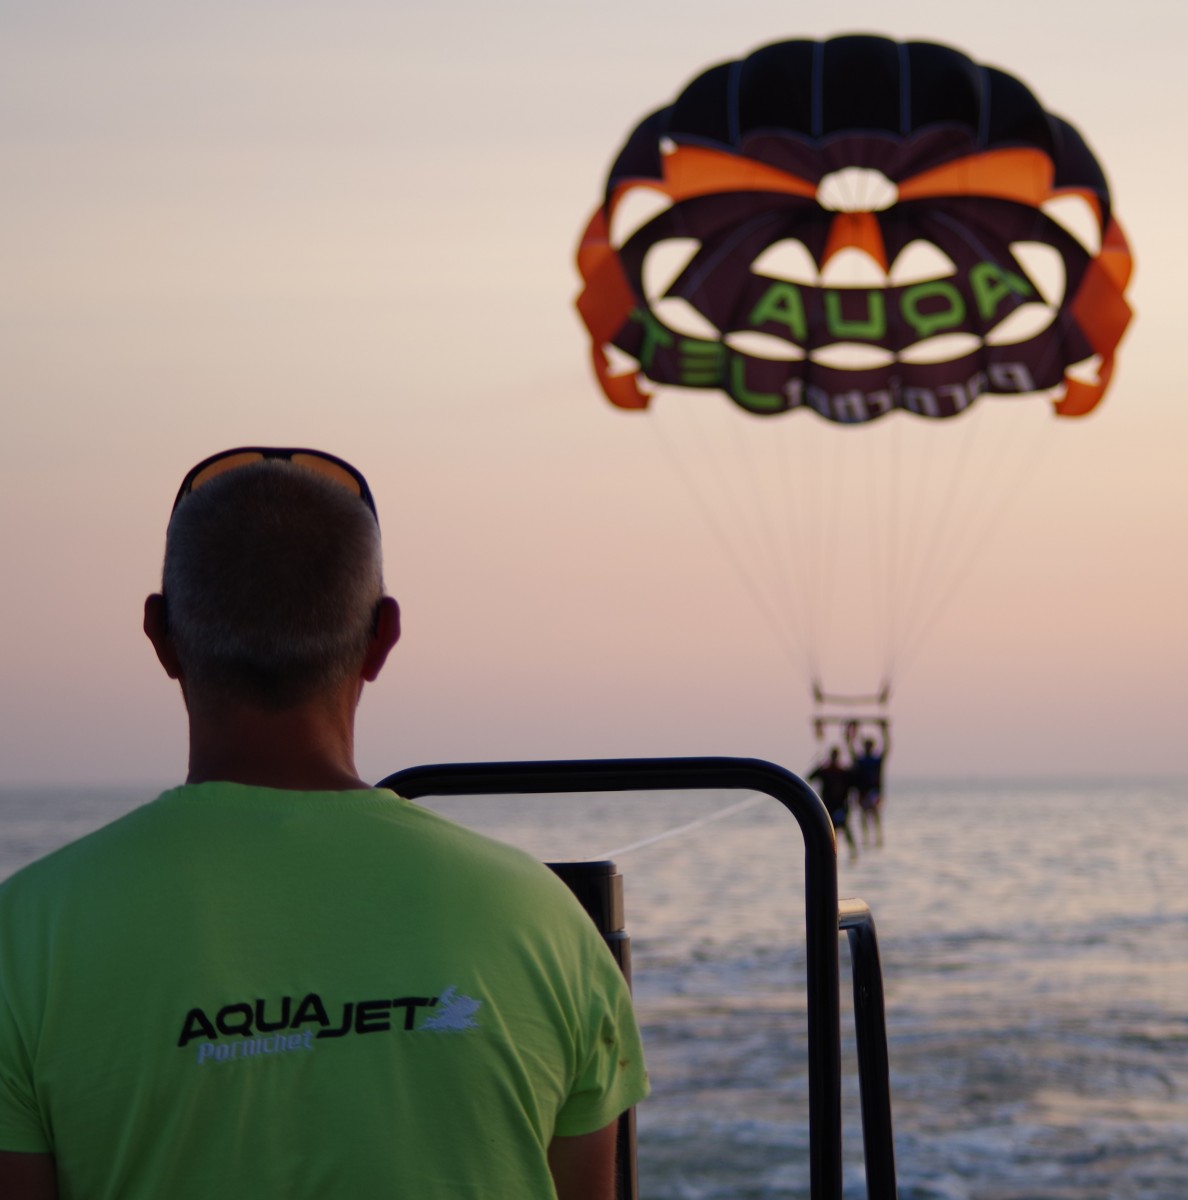 01 - Aquajet - Parachute Ascensionnel - Pornichet